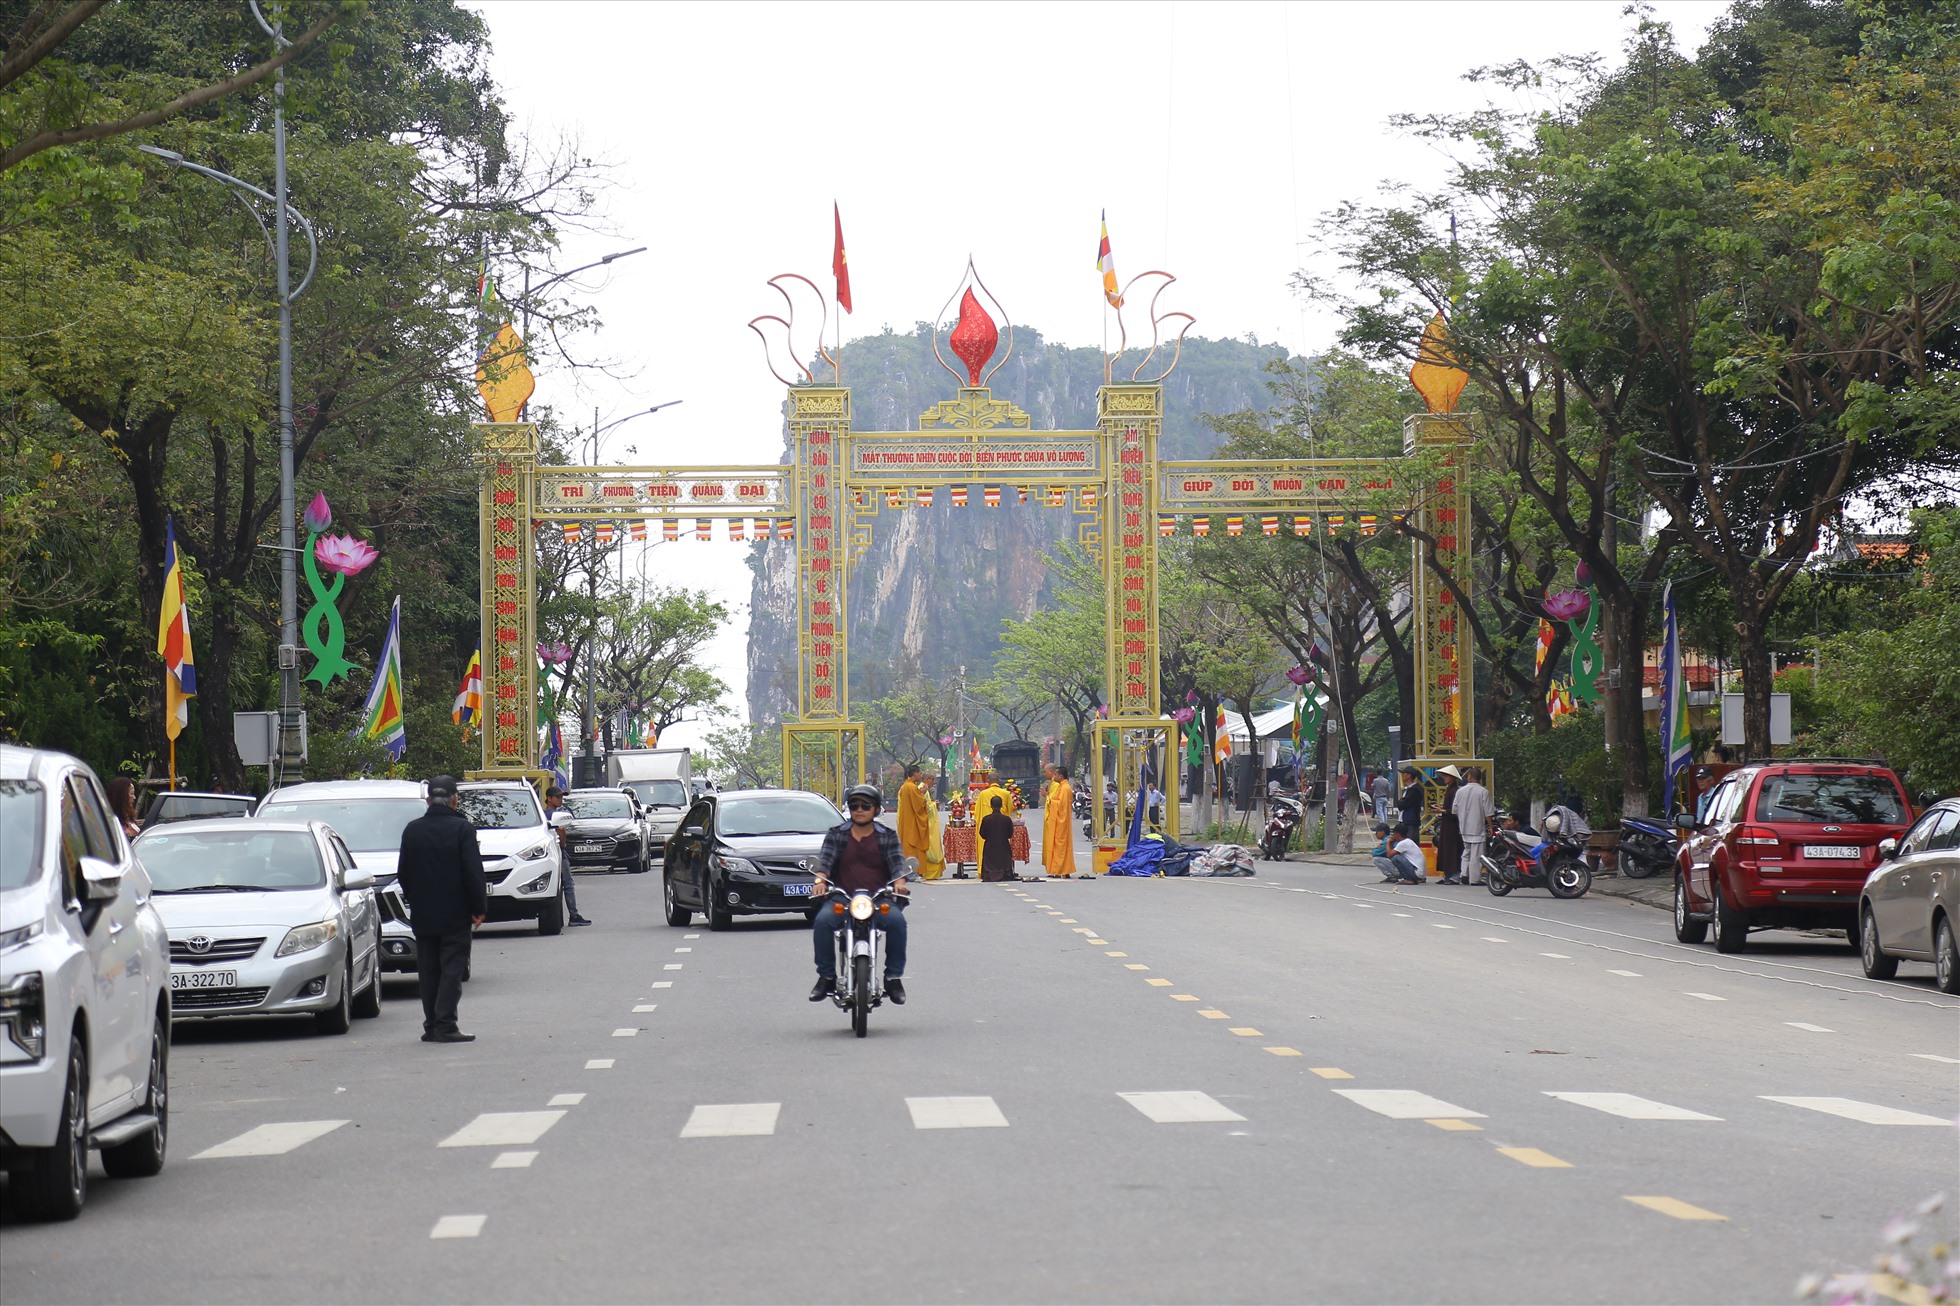 Lễ hội Quán Thế Âm năm nay diễn ra trong 3 ngày, từ ngày 8 đến 10-3 (nhằm các ngày 17, 18 và 19-2 âm lịch) tại khuôn viên chùa Quán Thế Âm và các tuyến đường Sư Vạn Hạnh, Lê Văn Hiến.